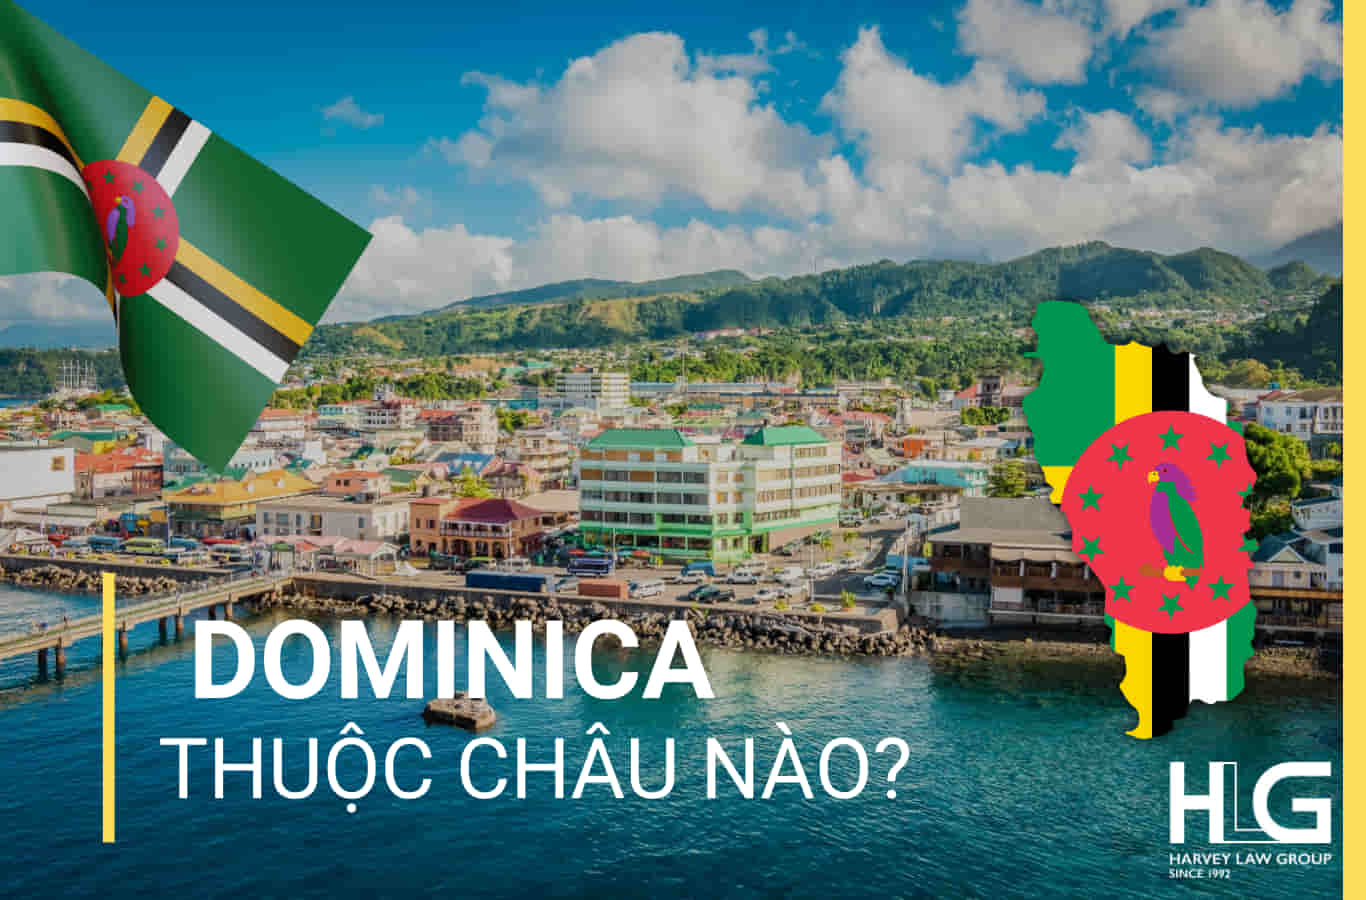 Dominica thuộc châu nào